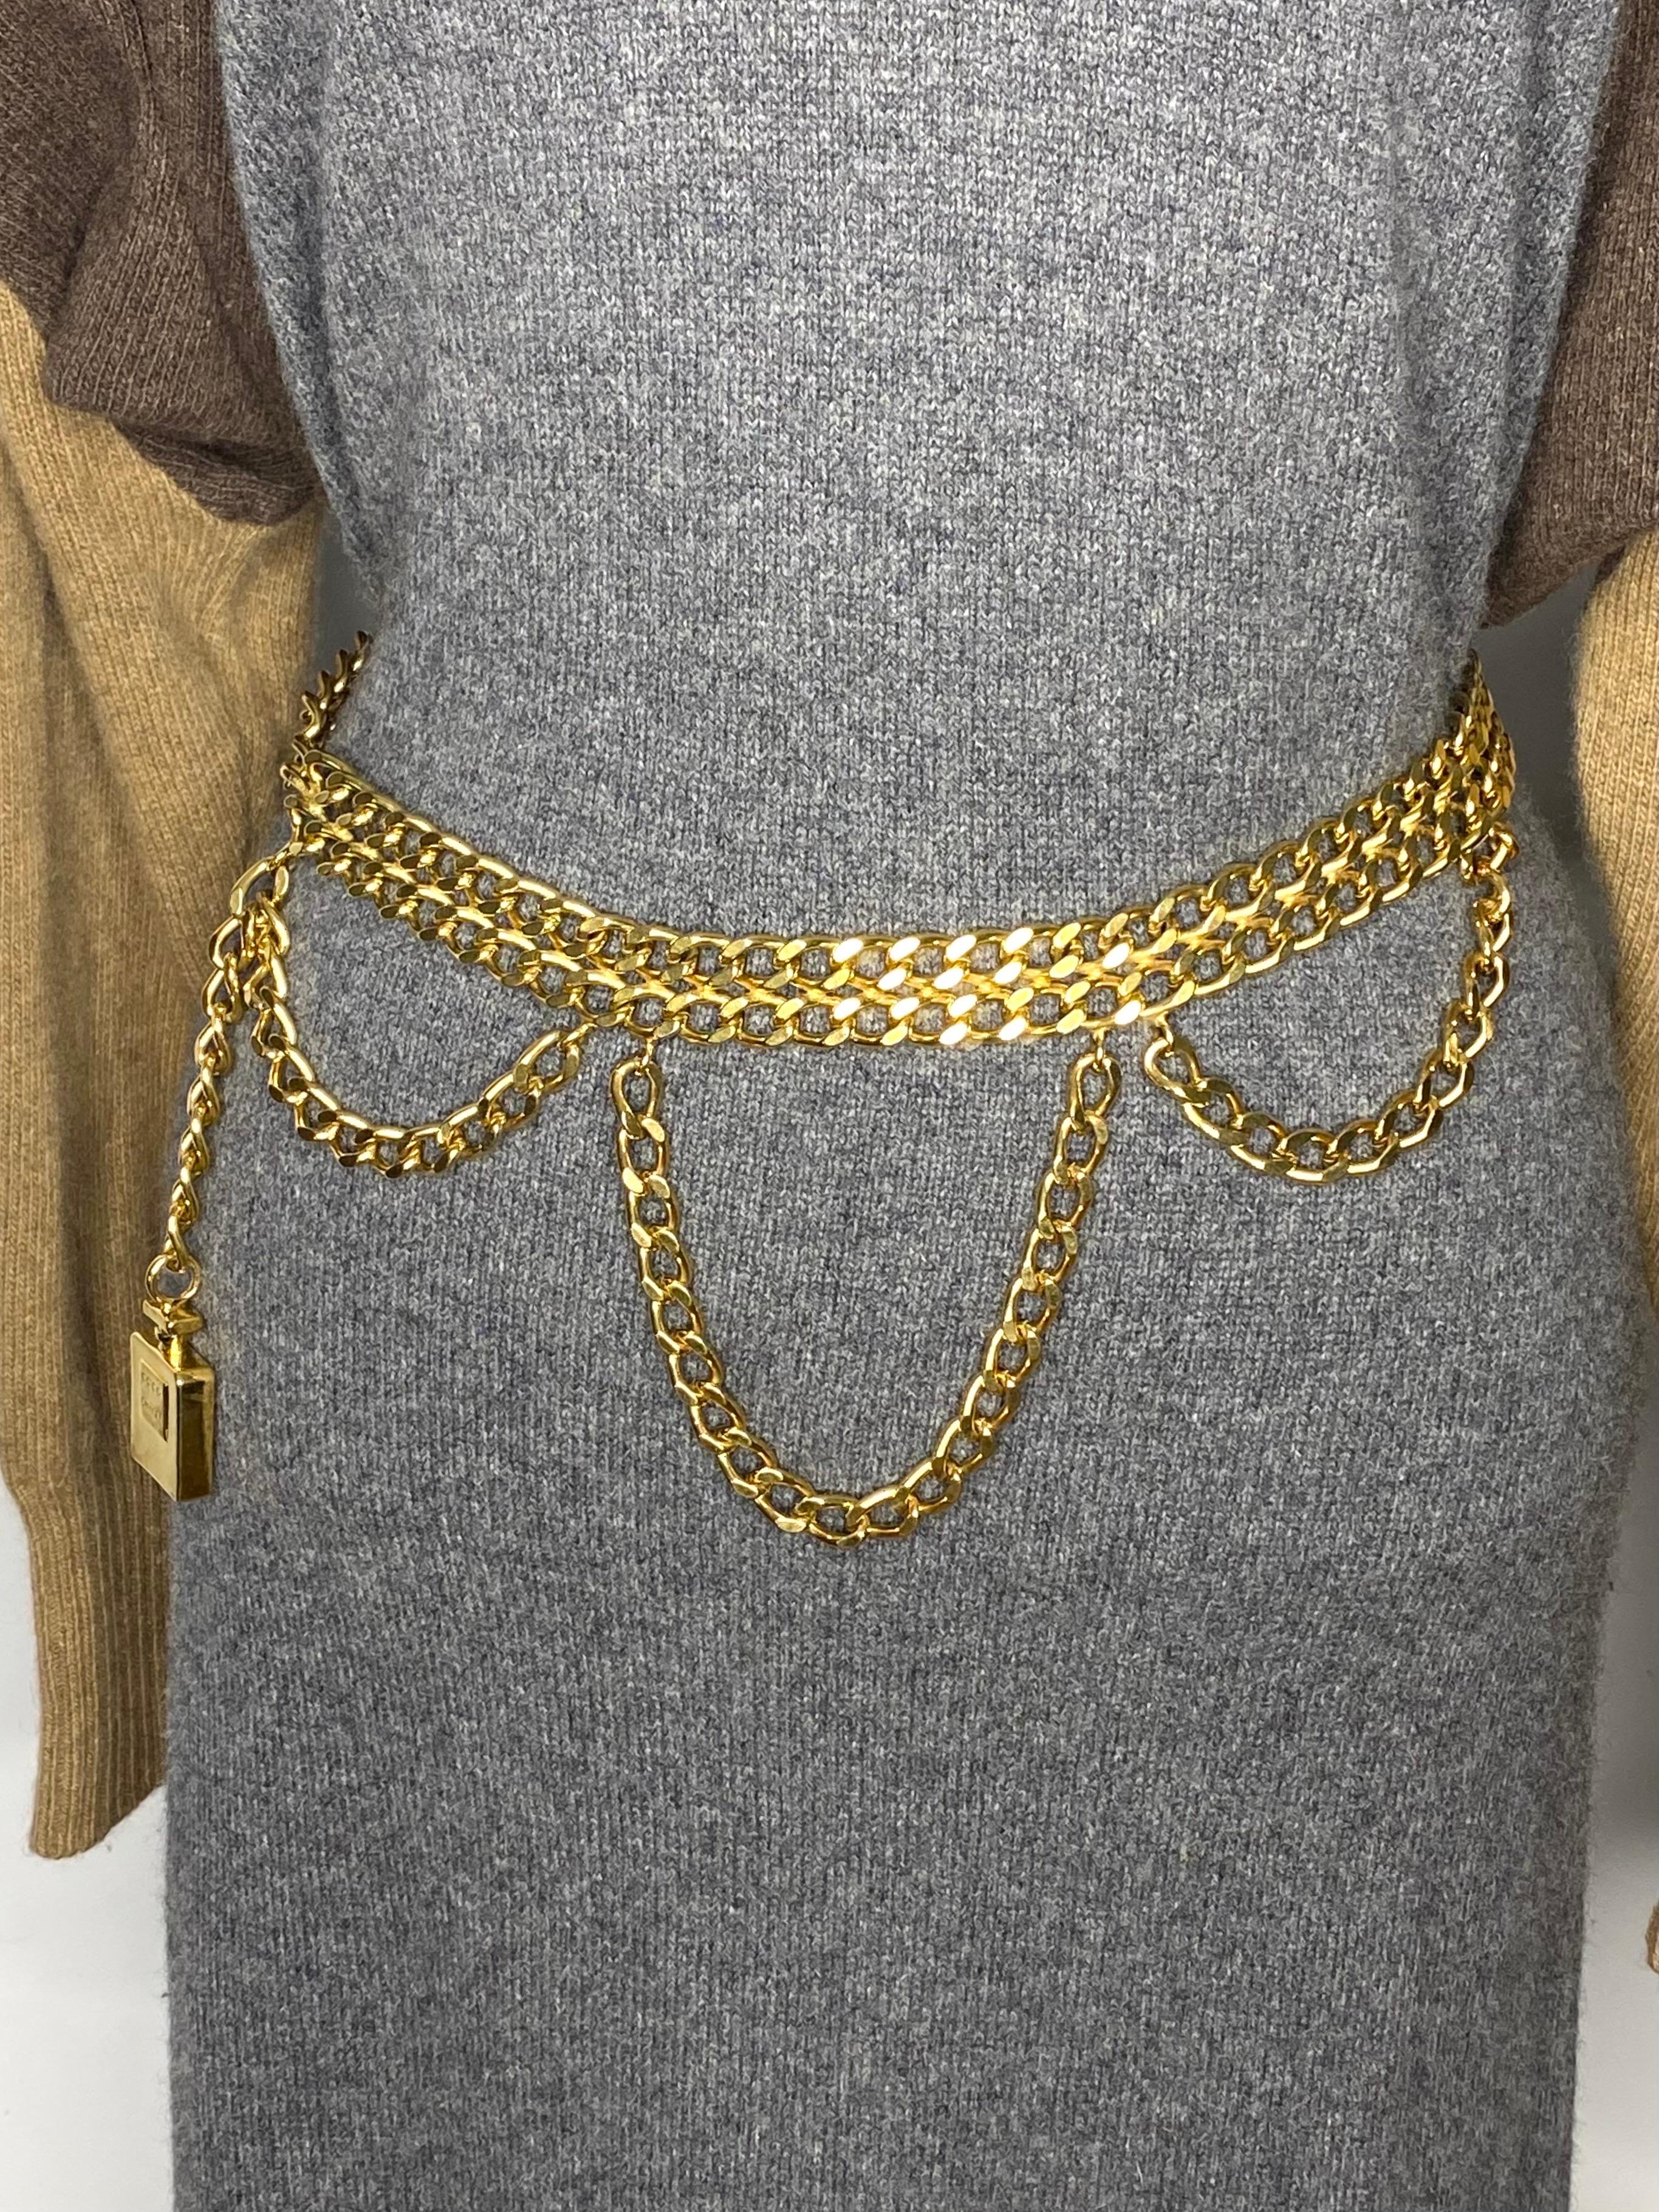 Magnifique Chanel vintage
ceinture, double chaîne en or
de 2,2 cm, joliment drapée
avec des chaînes (au niveau le plus bas)
10cm), se terminant par un
flacon de parfum estampillé
coco chanel avec une hauteur
de 4 cm et de 2,8 cm de large.
La chaîne